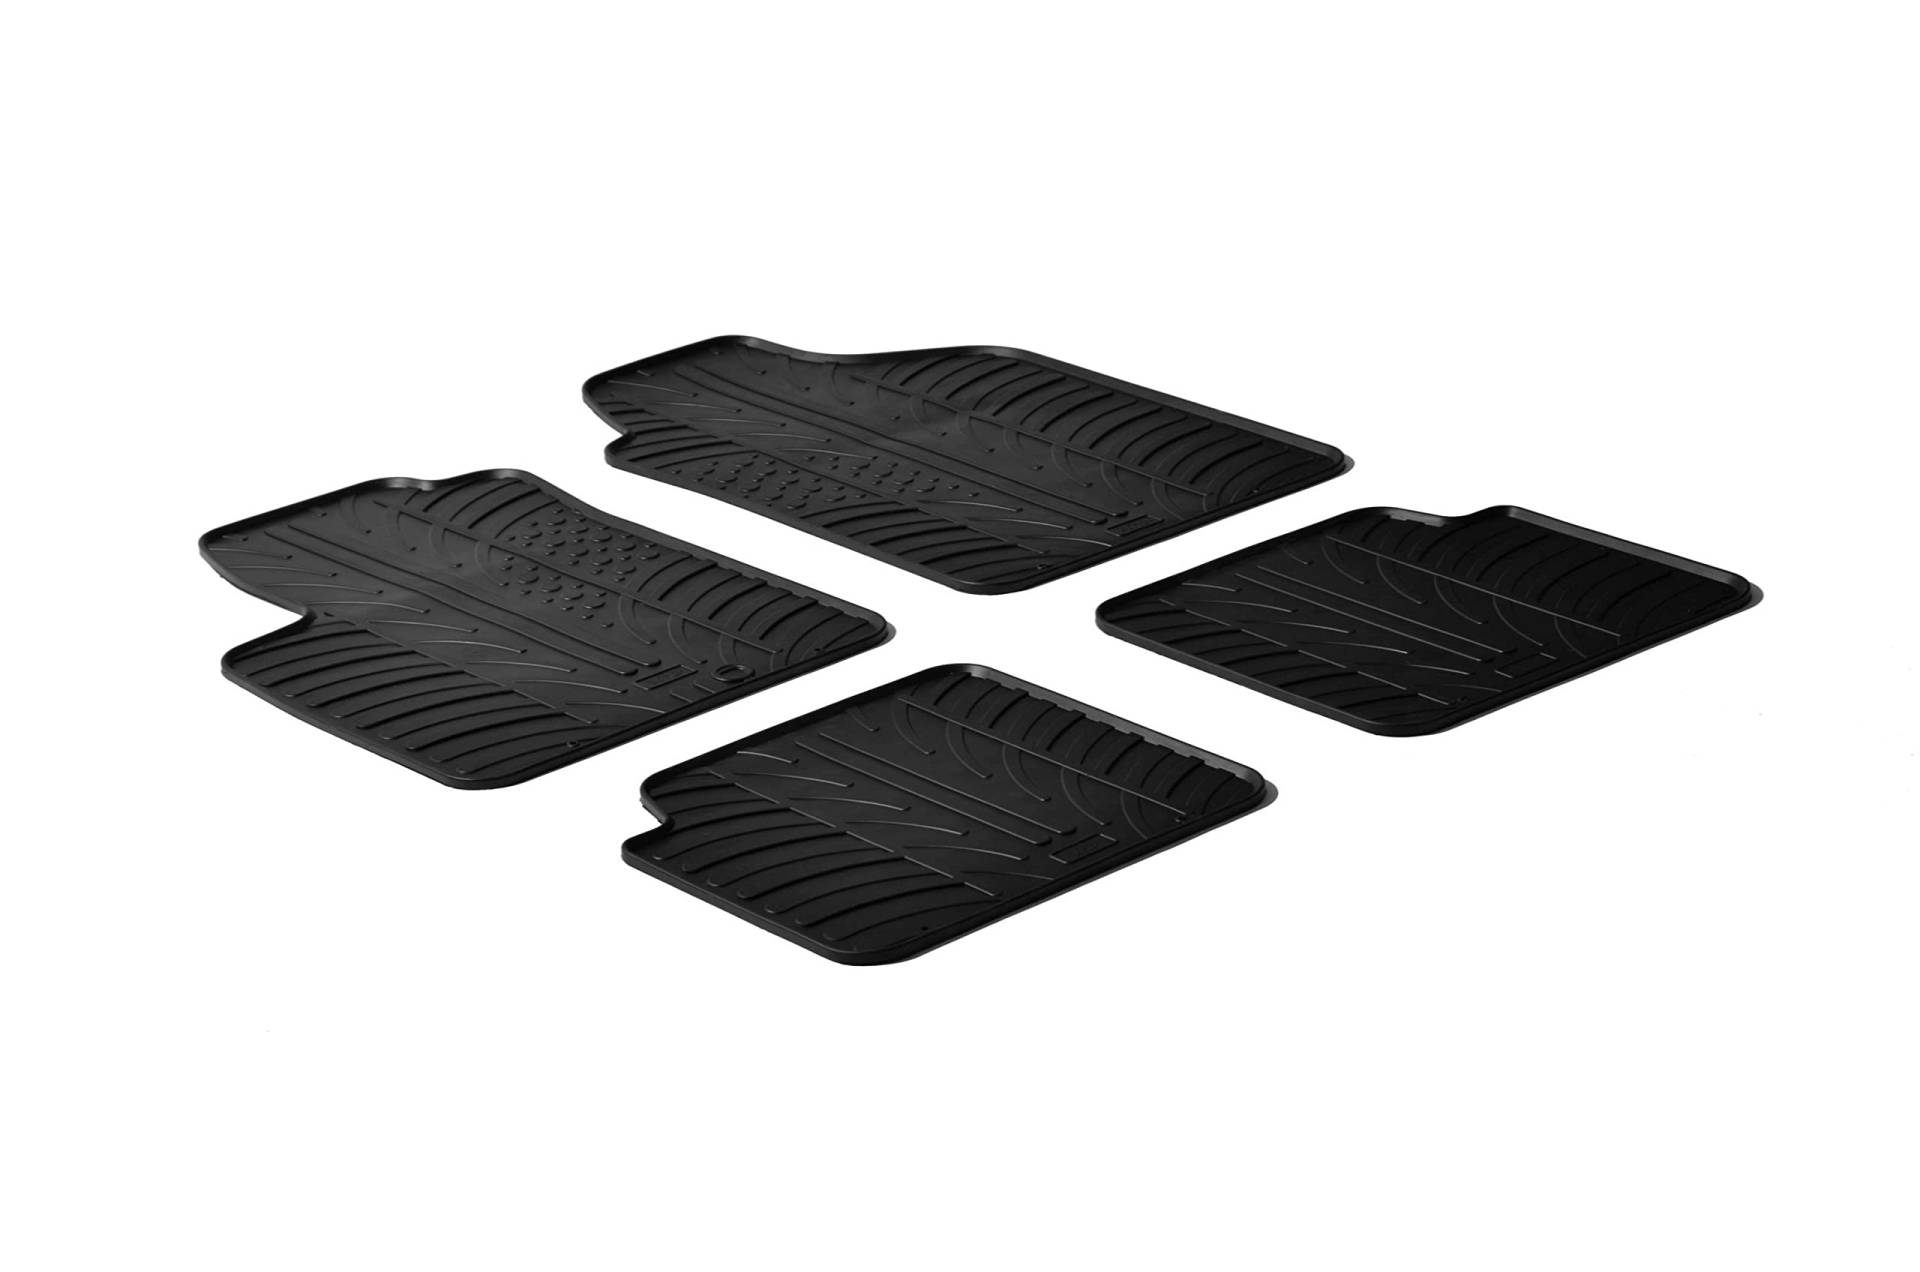 AROBA GL0133 Design Gummi Fußmatten kompatibel mit FIAT 500, Abarth 500, 500 C BJ. 10.2007-06.2015 erhöhter Rand 4 TLG Farbe Schwarz Gummimatten Automatten passgenau von AROBA